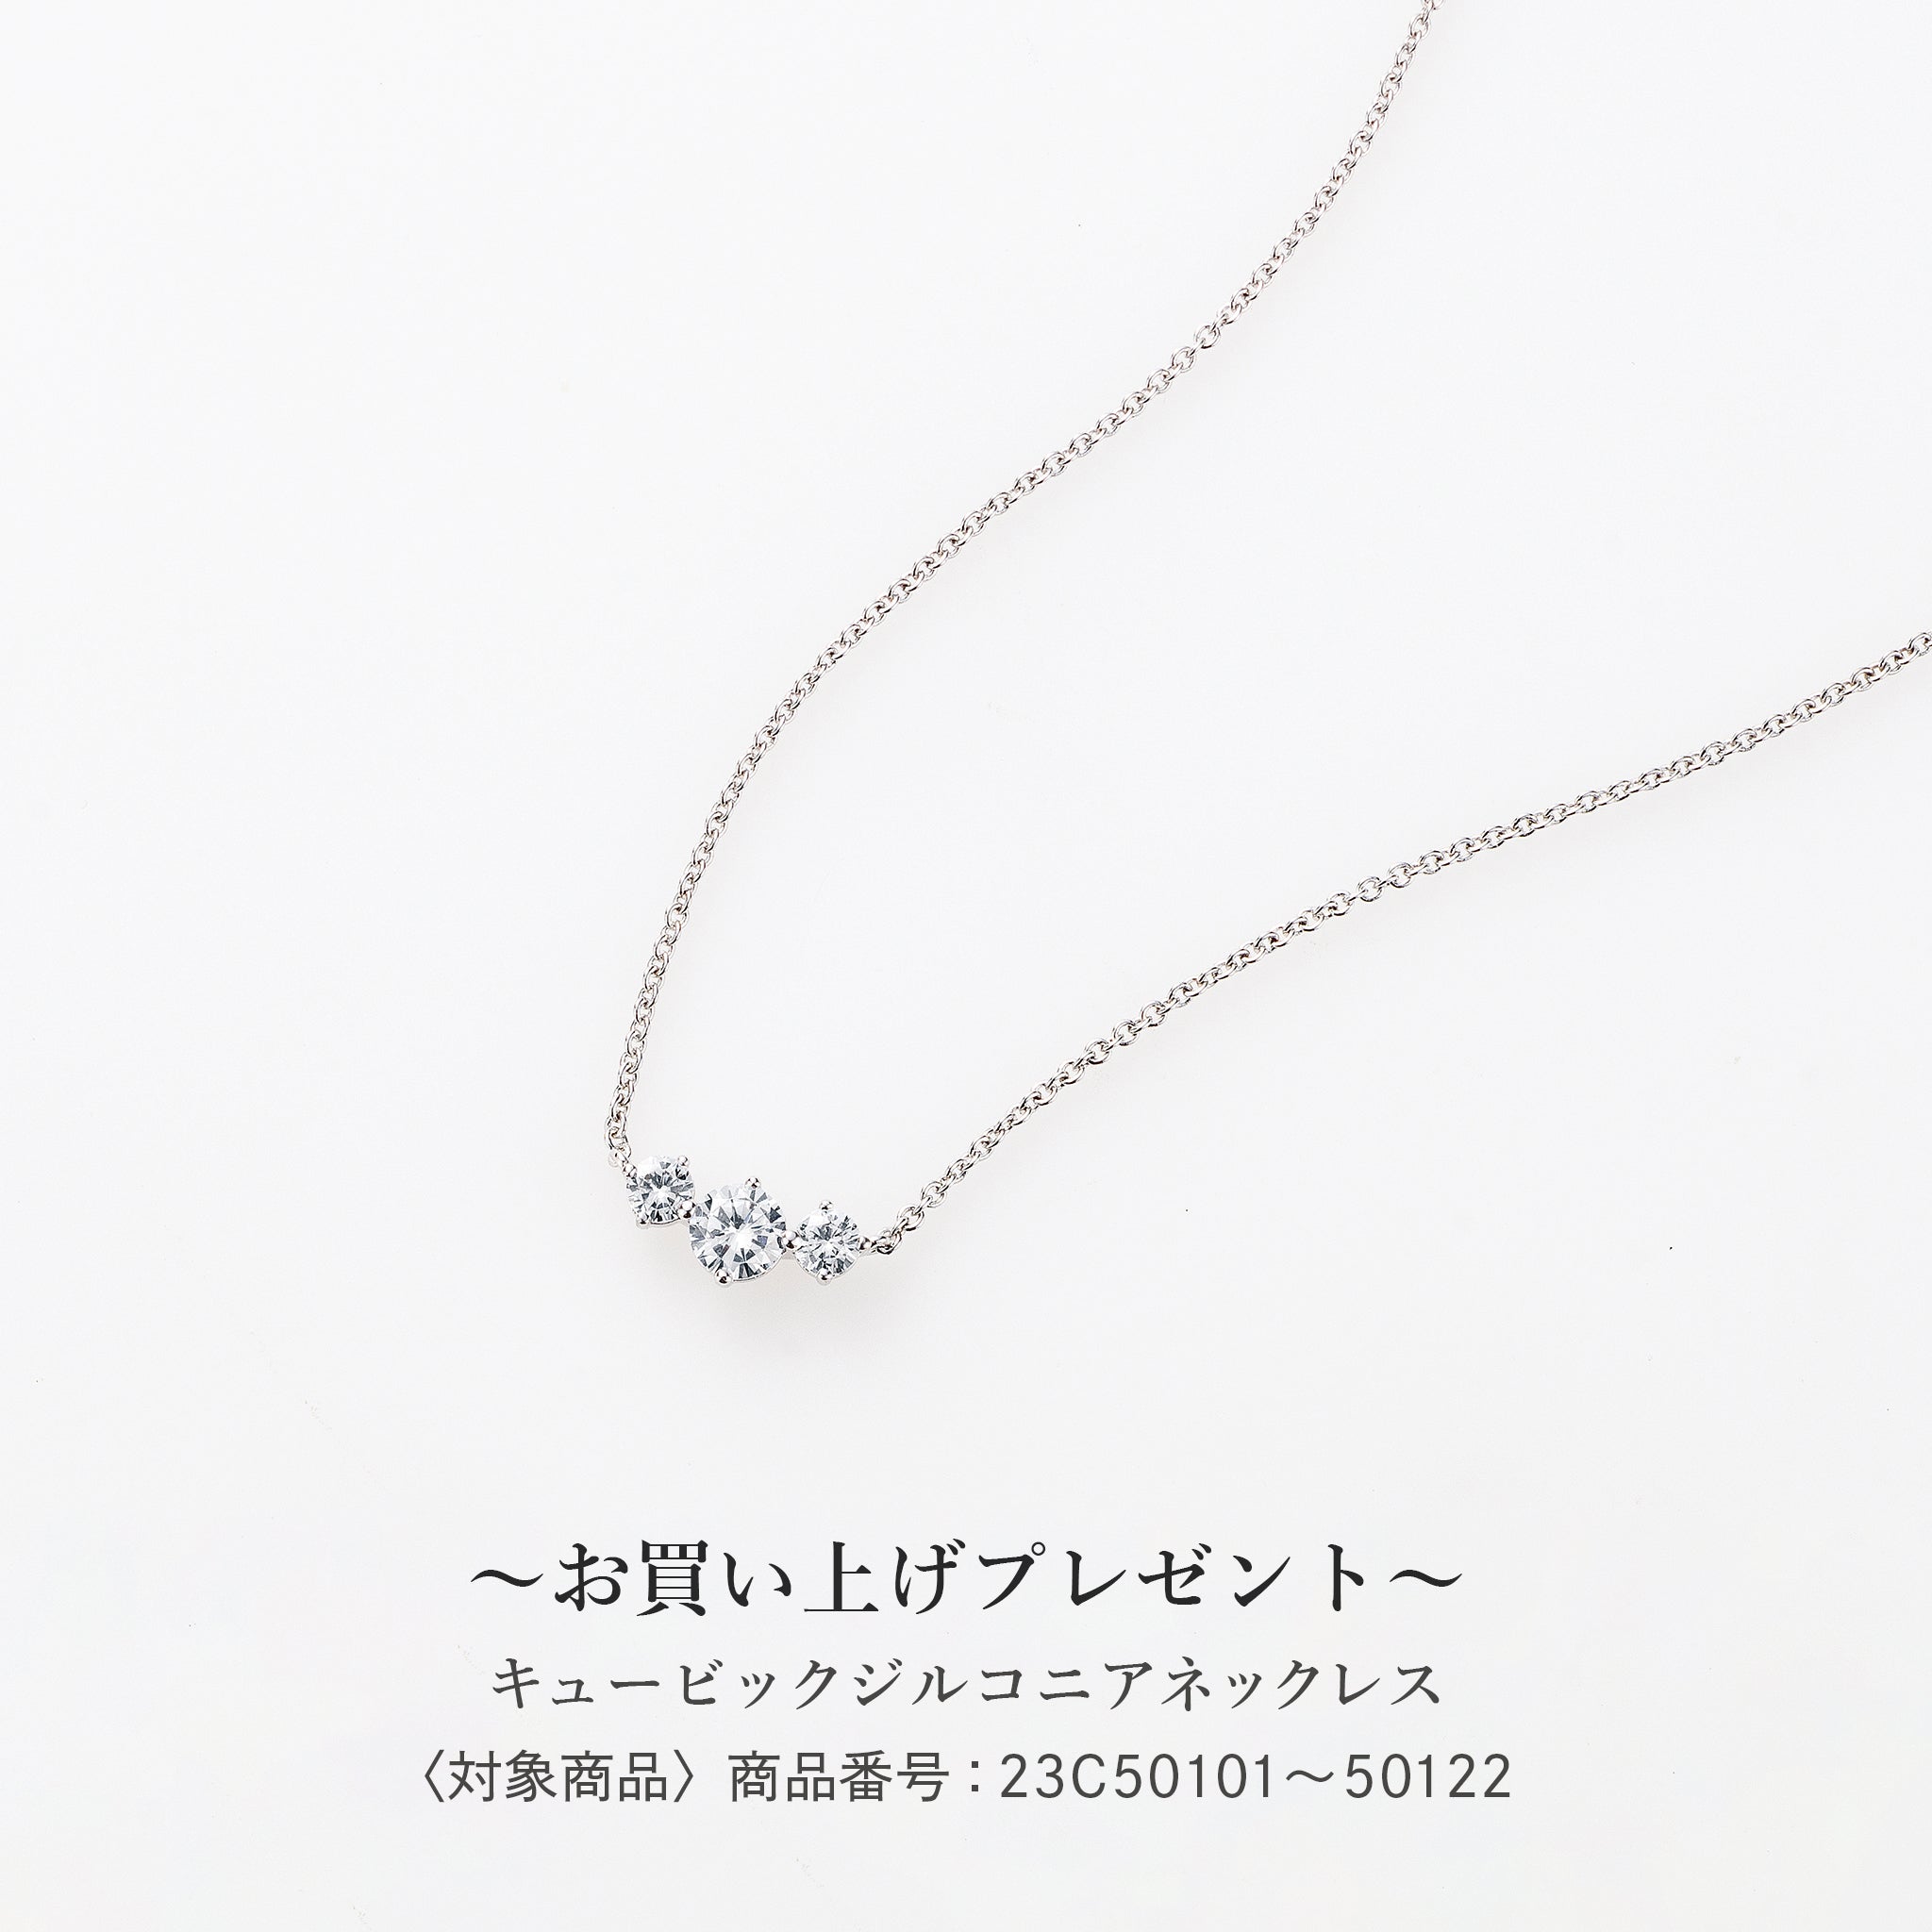 【新品】PT ダイヤモンド ネックレス 0.245CT D SI2 Good